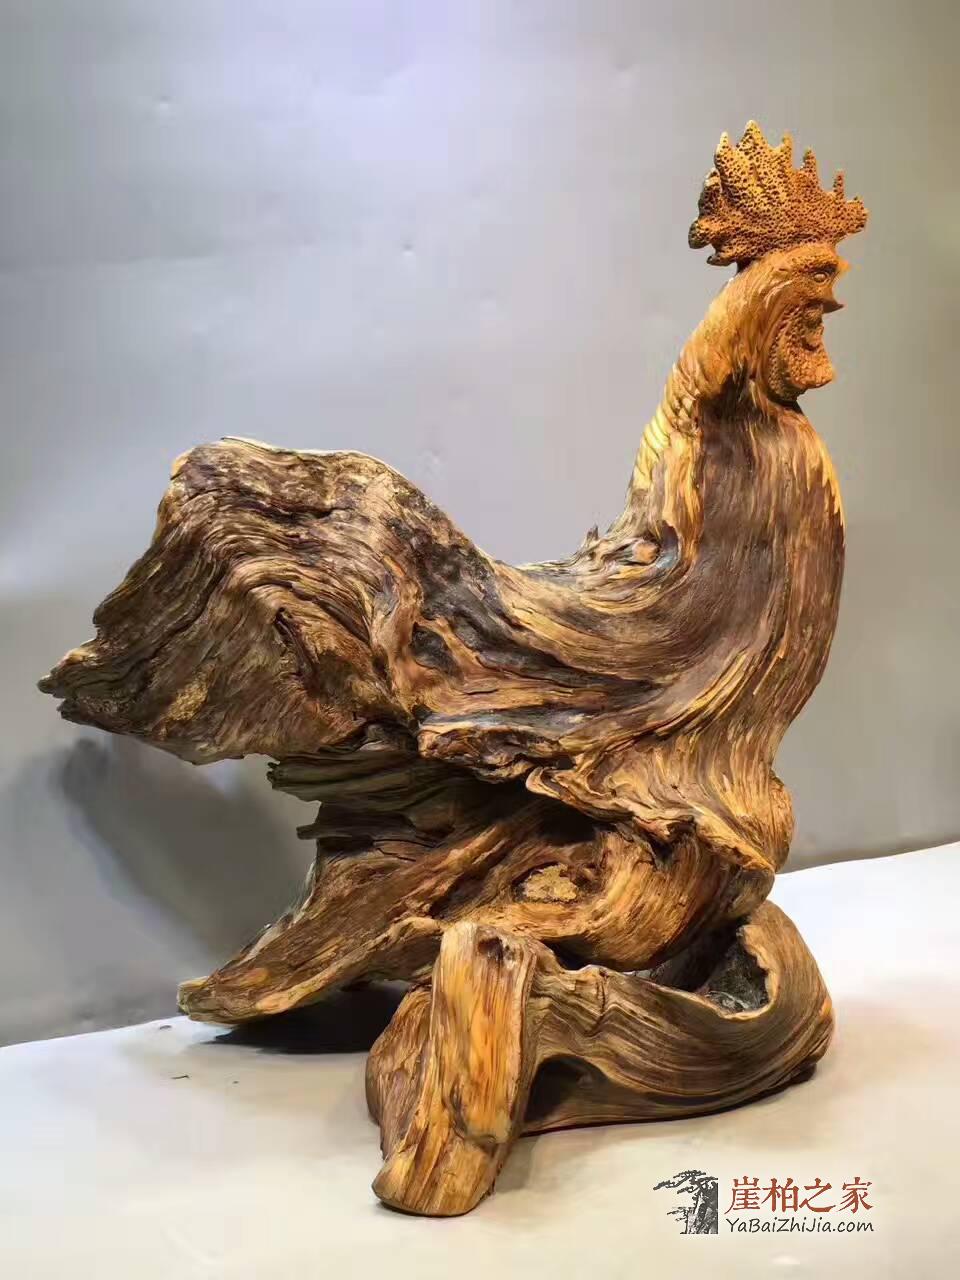 崖柏根雕《大公鸡》造型生动形象 创意礼品摆件-4